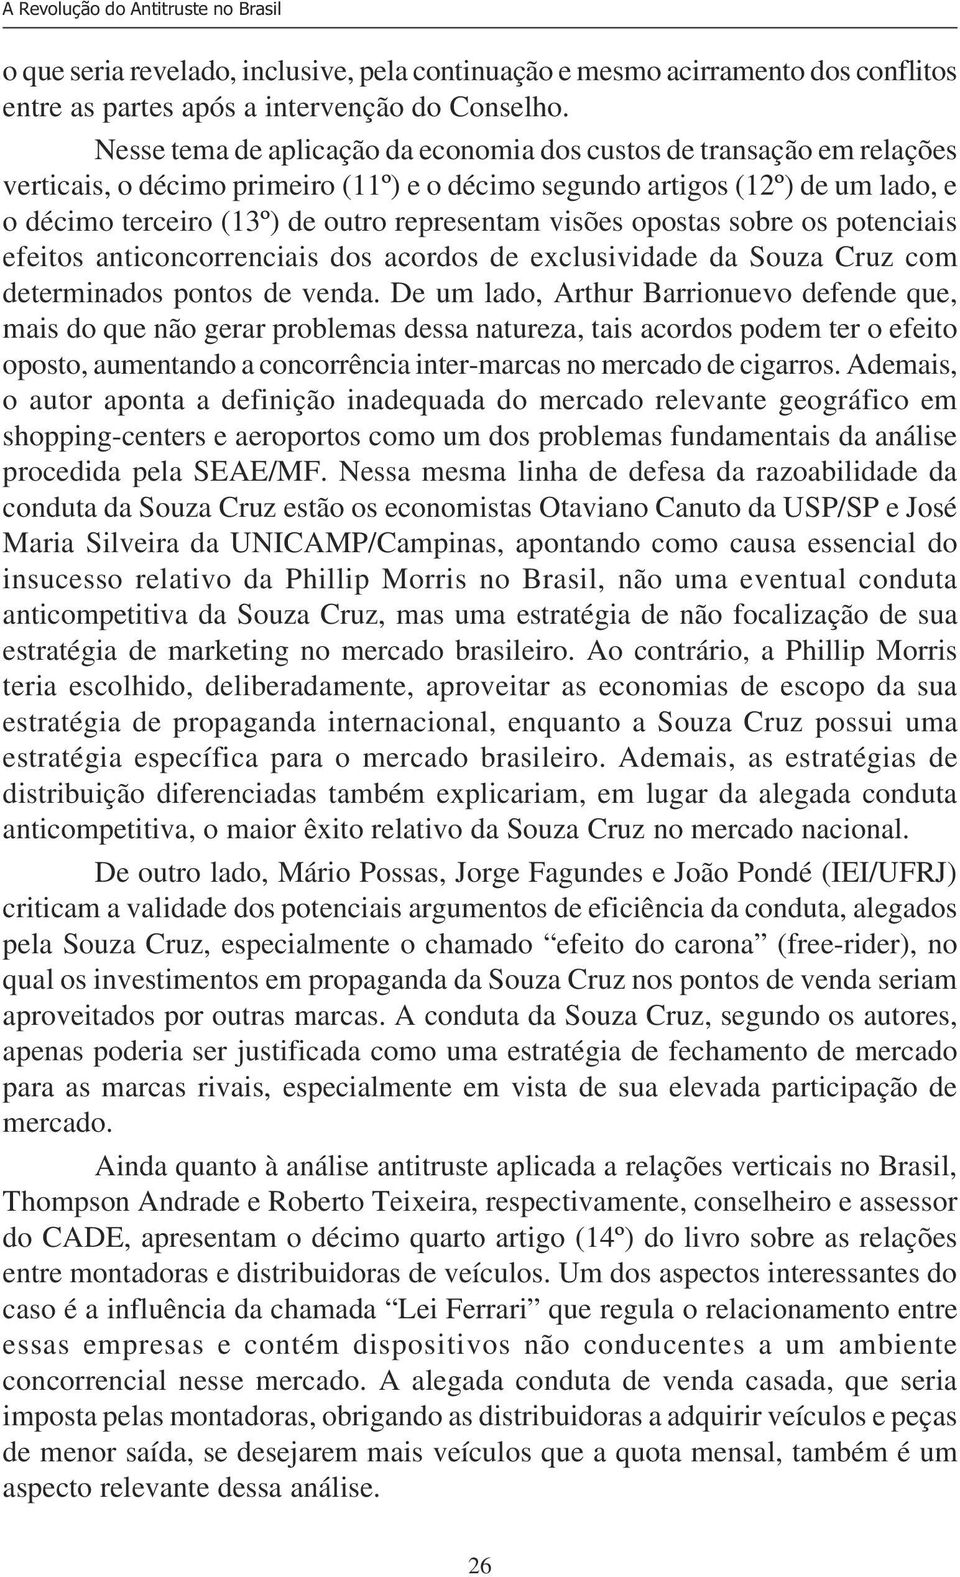 visões opostas sobre os potenciais efeitos anticoncorrenciais dos acordos de exclusividade da Souza Cruz com determinados pontos de venda.